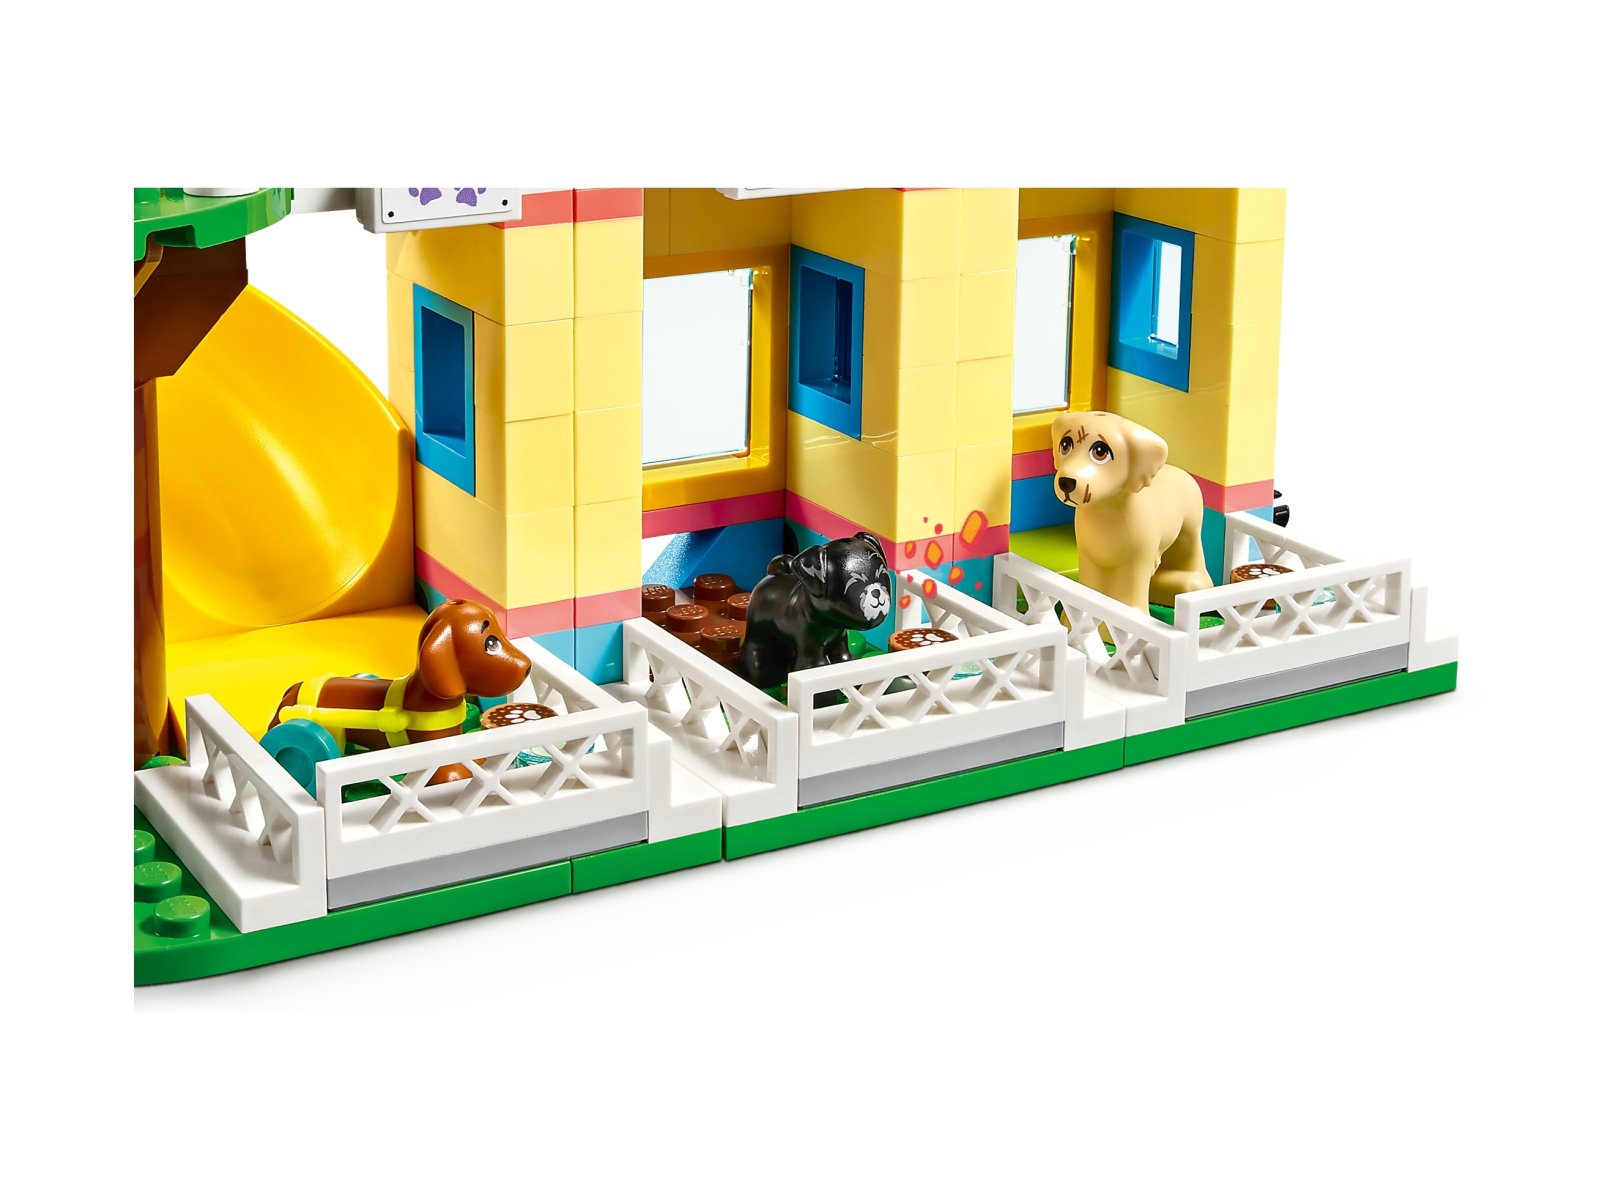 LEGO Friends 41727 Centrum ratunkowe dla psów